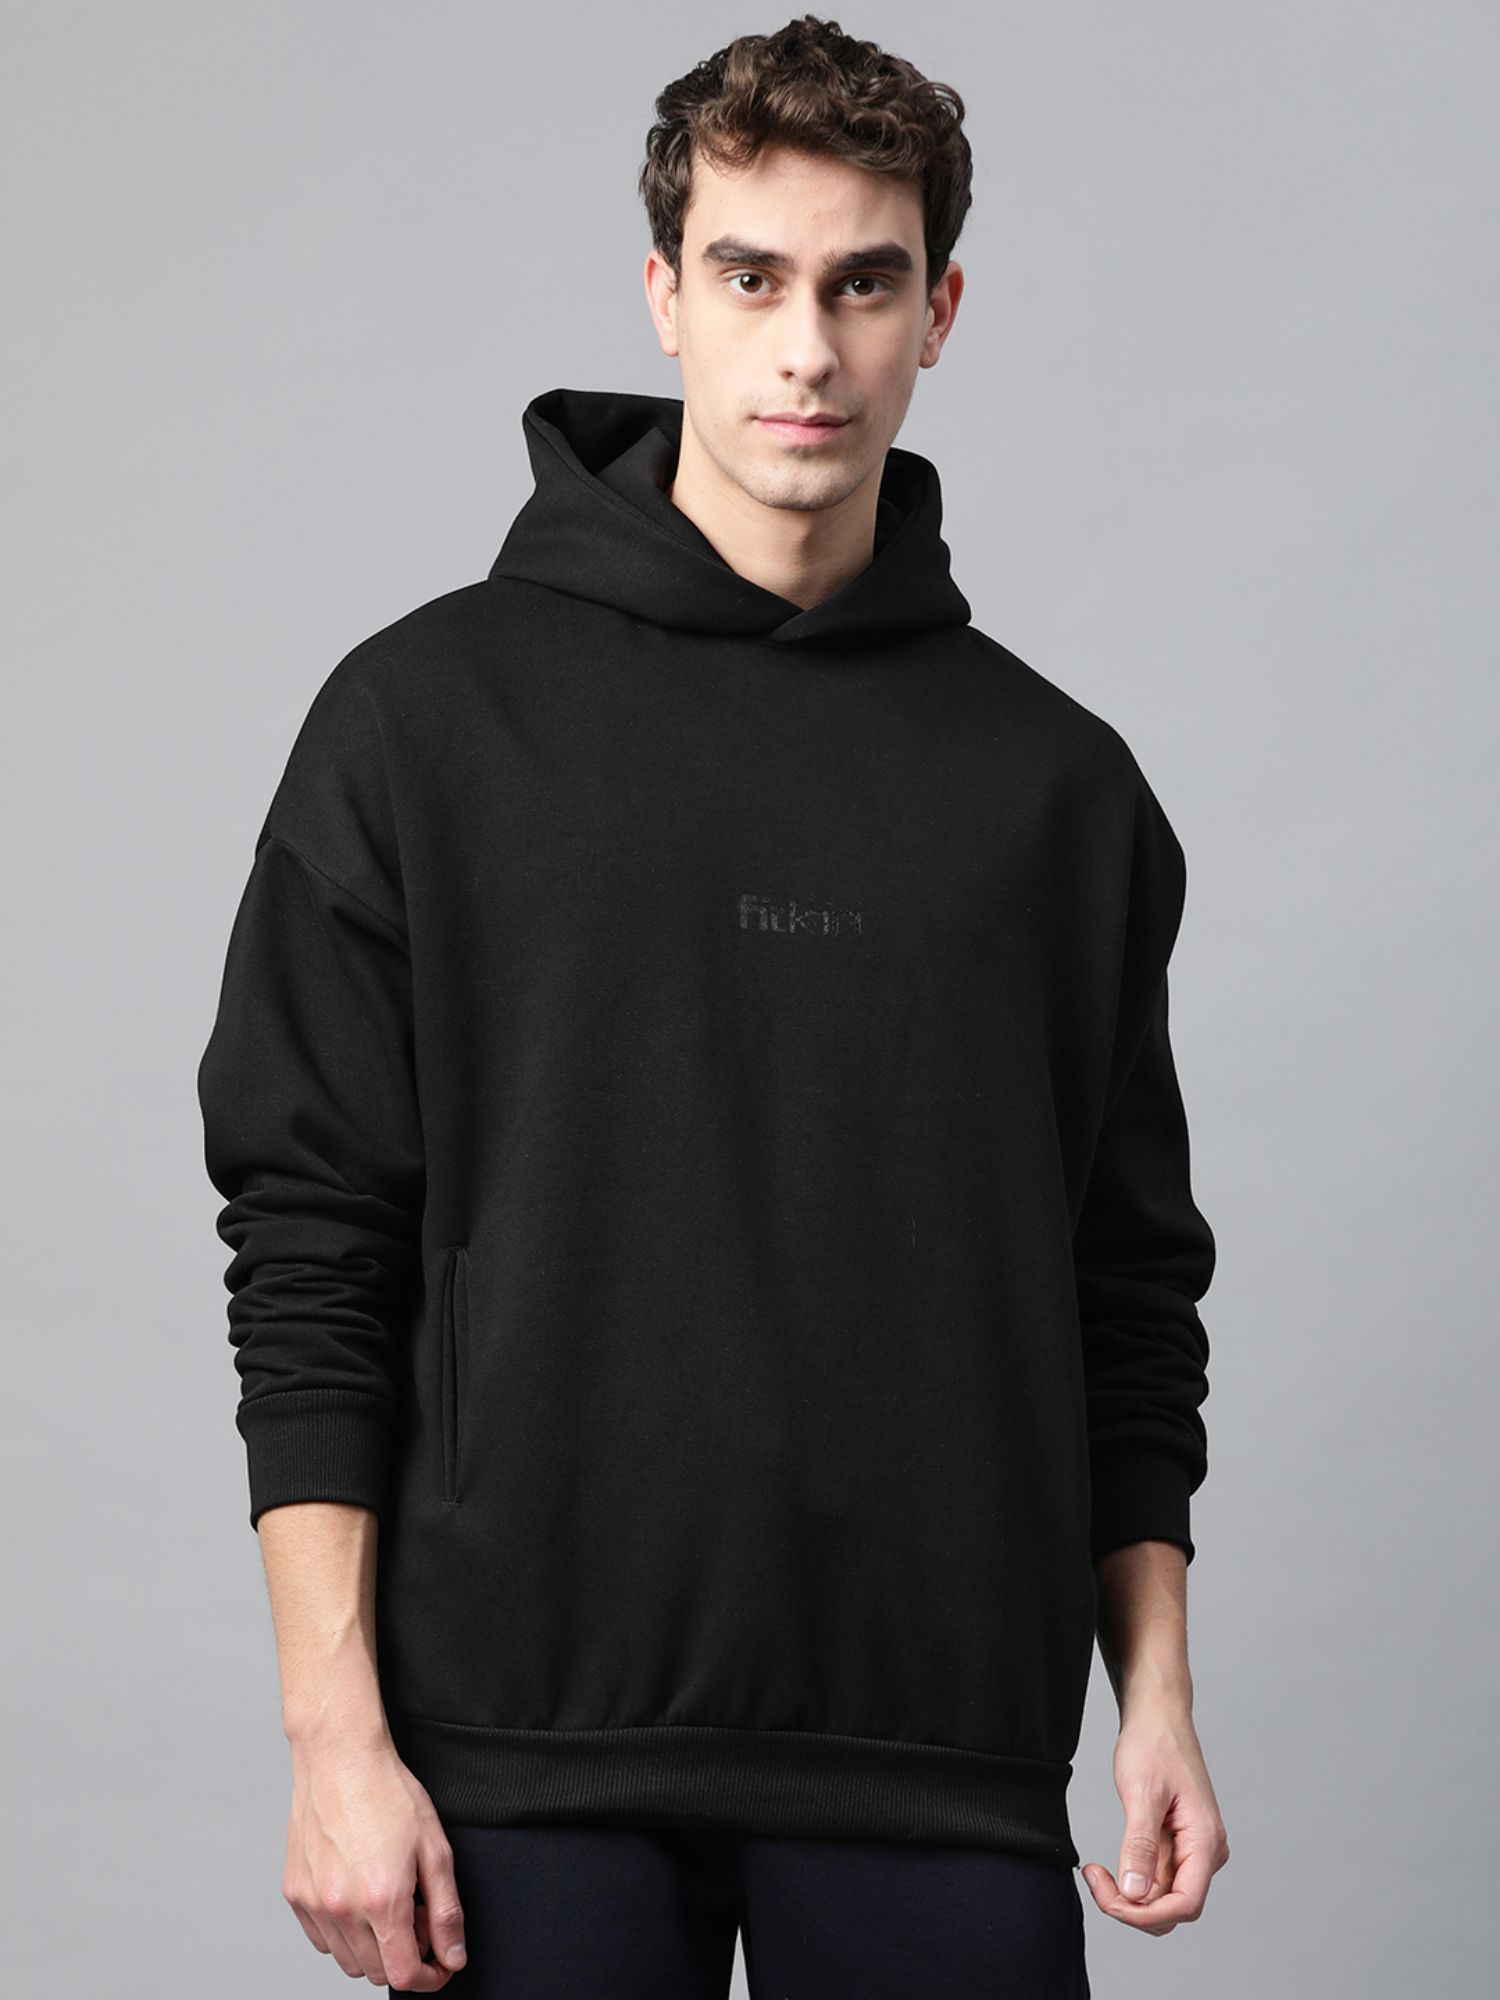 Buy Fitkin Mens Black Fleece Winter Hoodie Sweatshirt Online